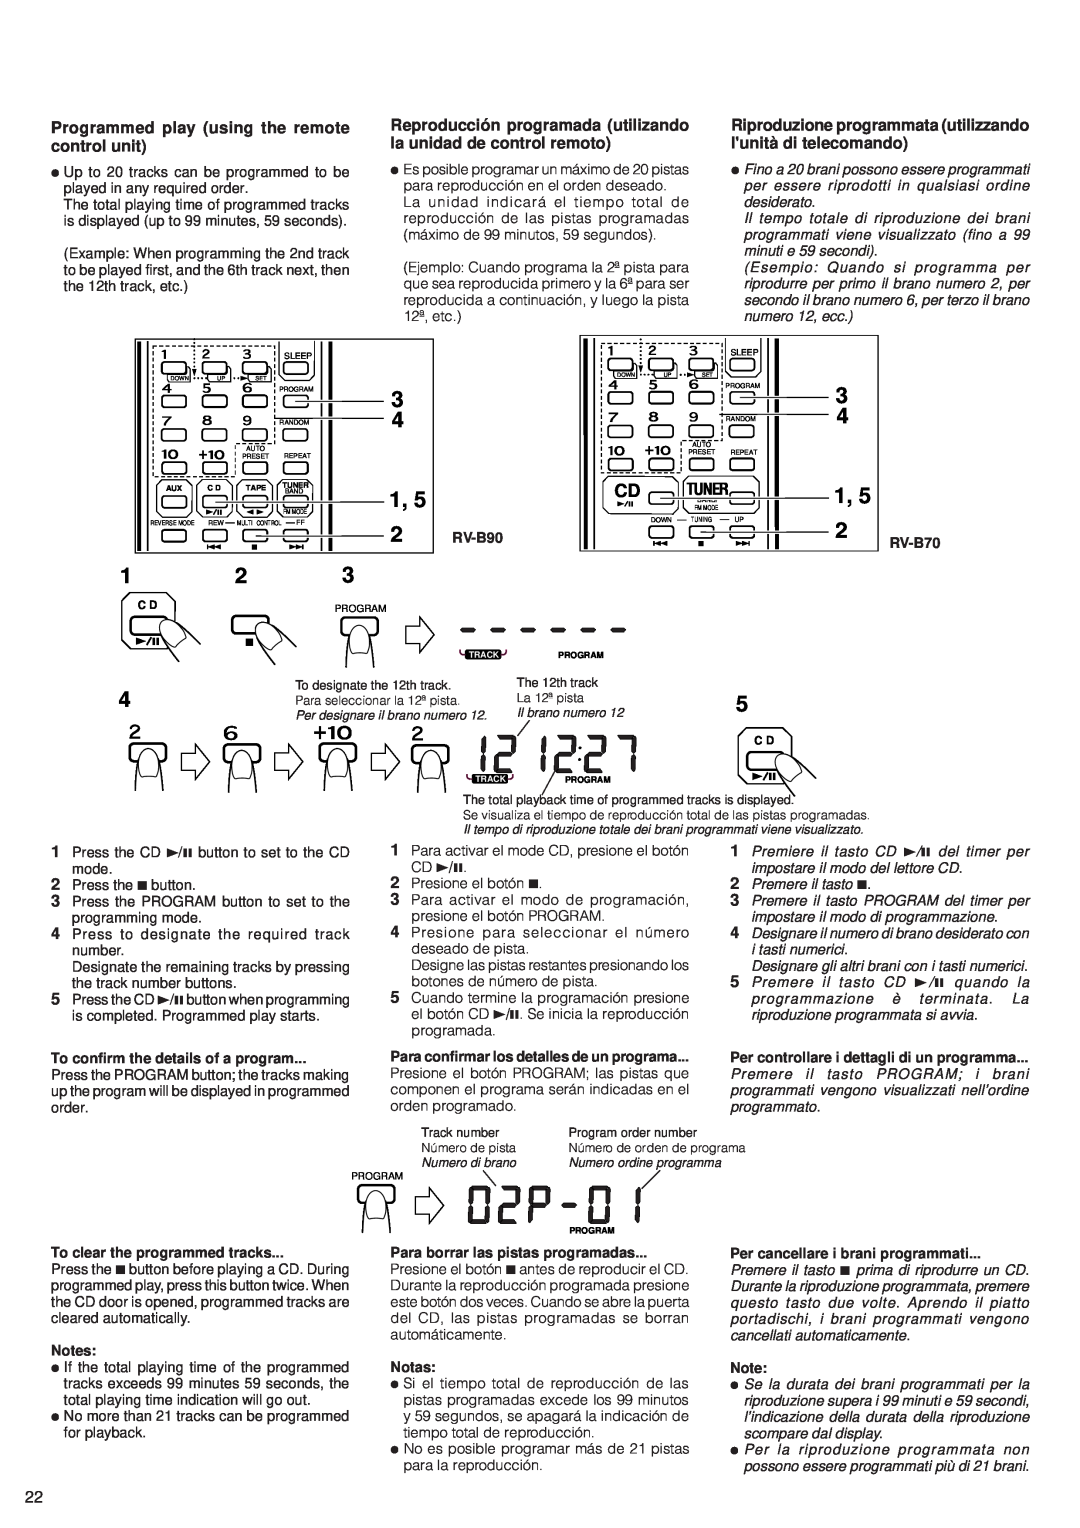 JVC RV-B70, RV-B90 manual 